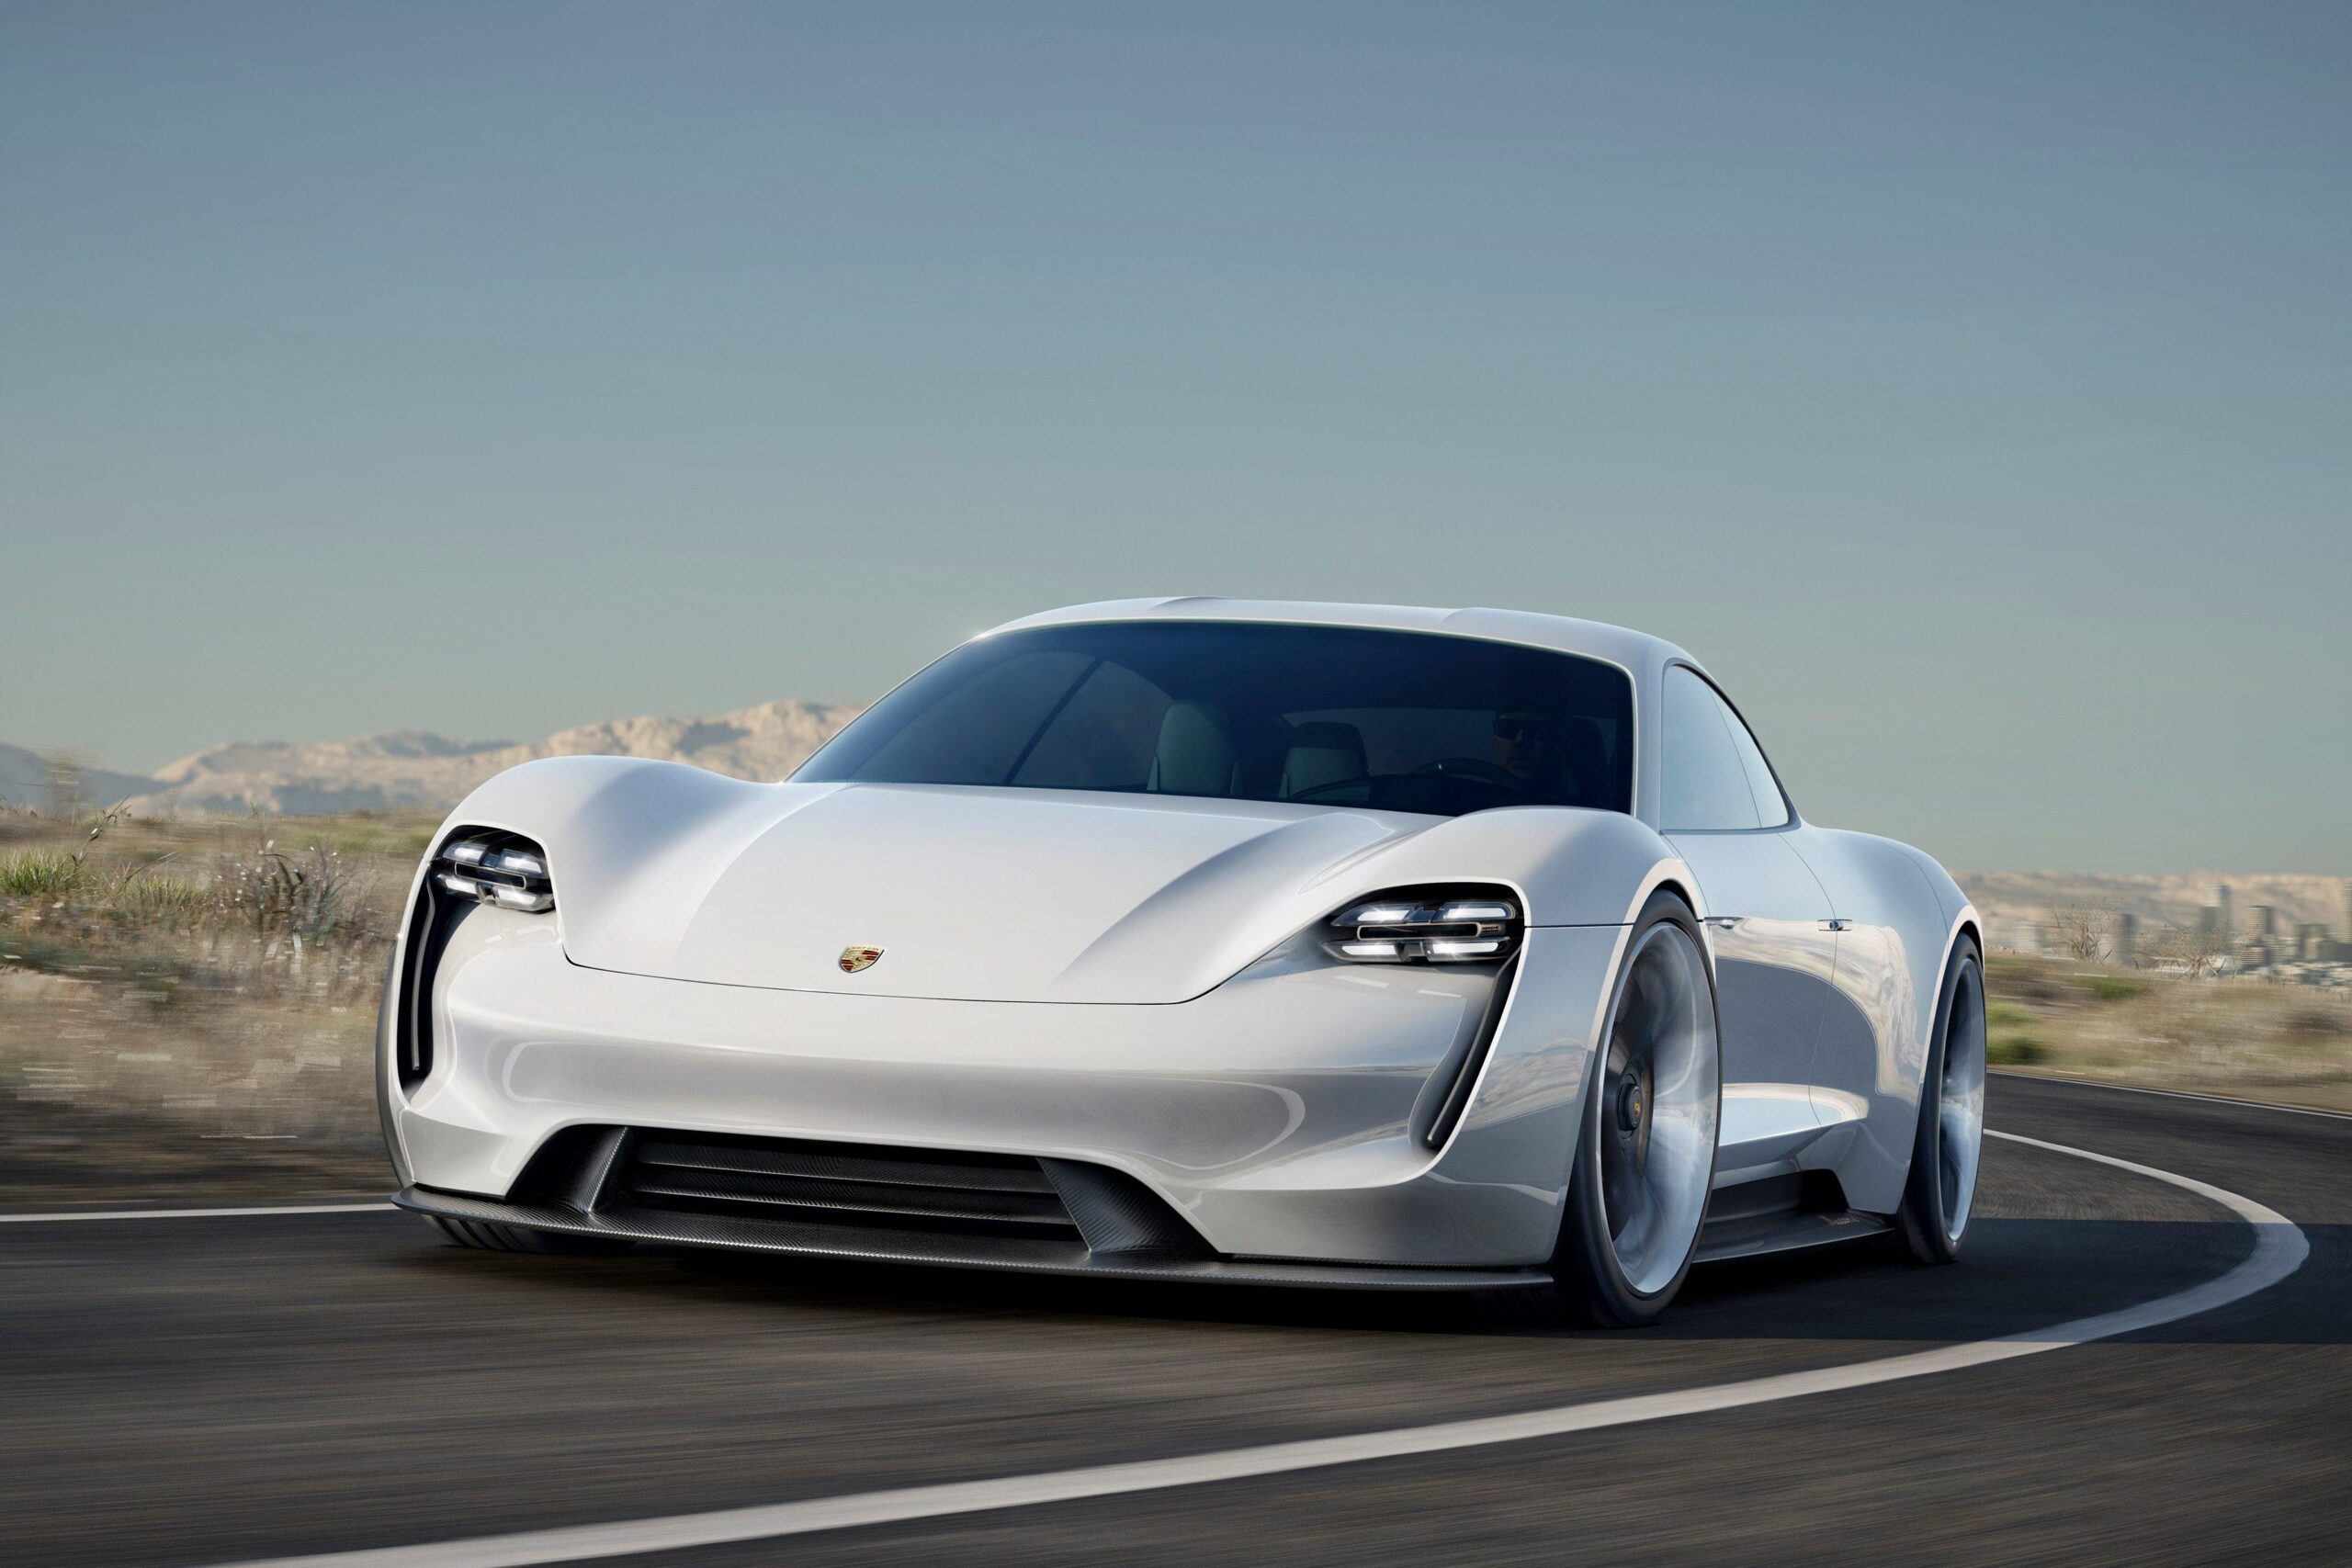 Porsche releases first teaser Wallpaper of new Taycan